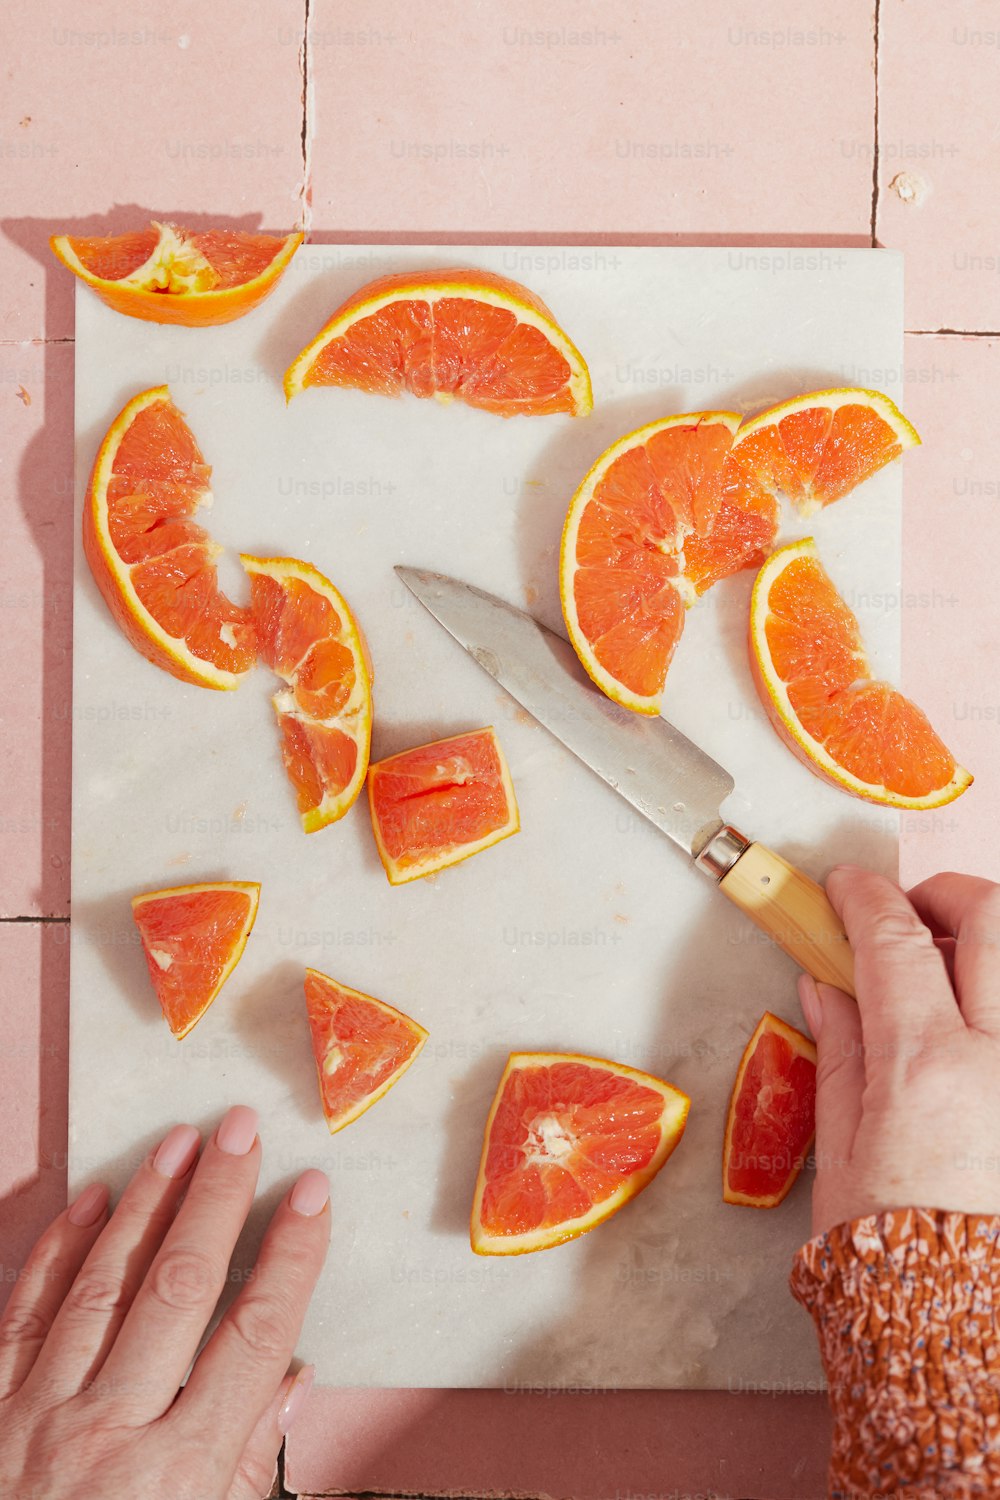 Una persona cortando rodajas de naranja en una tabla de cortar